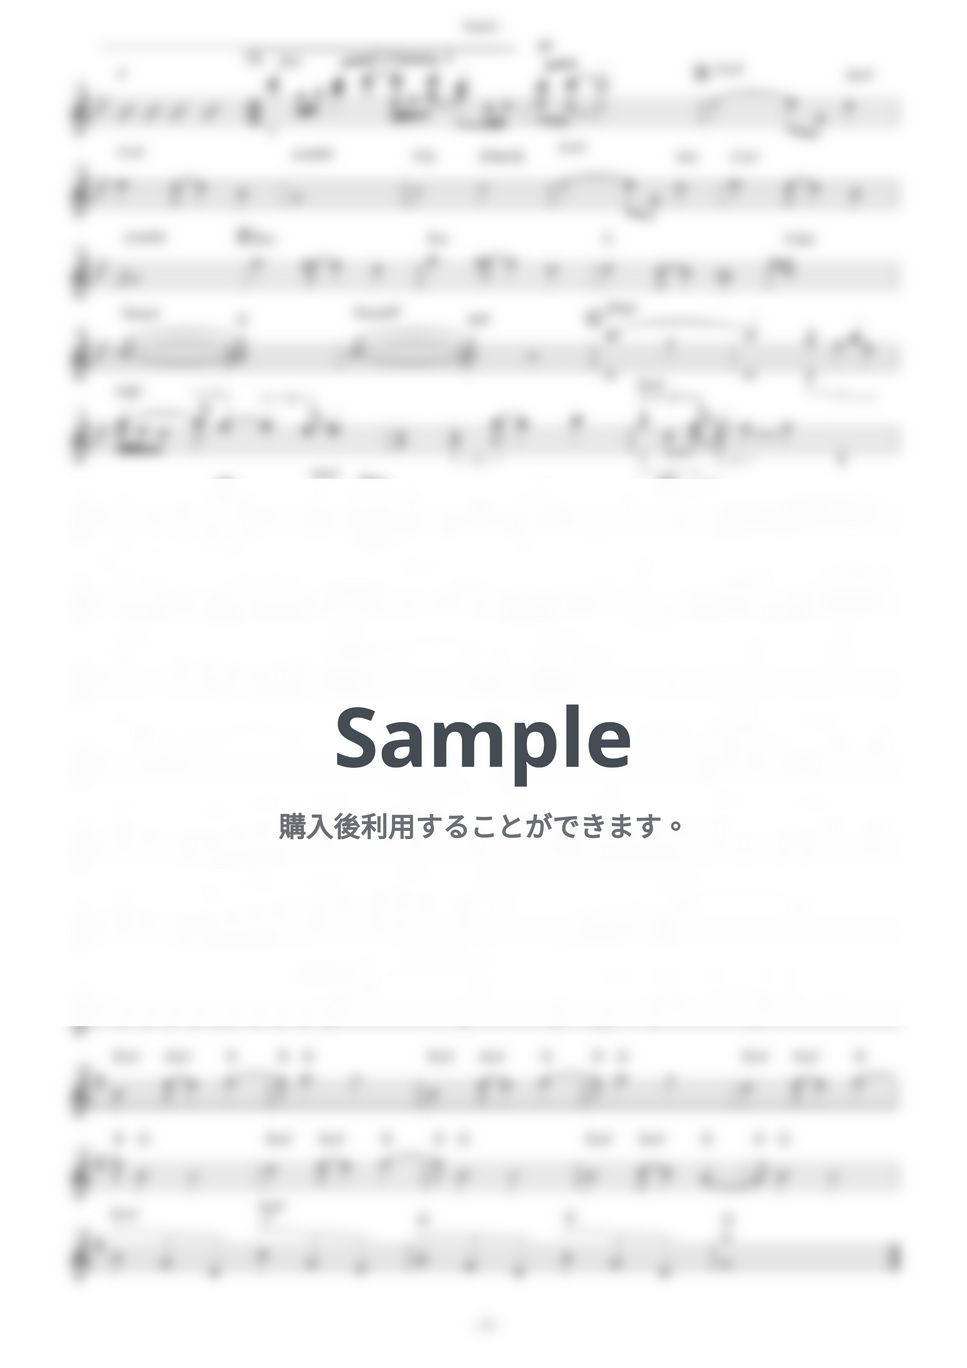 メロキュア - Agape (『円盤皇女ワるきゅーレ』 / in C) by muta-sax